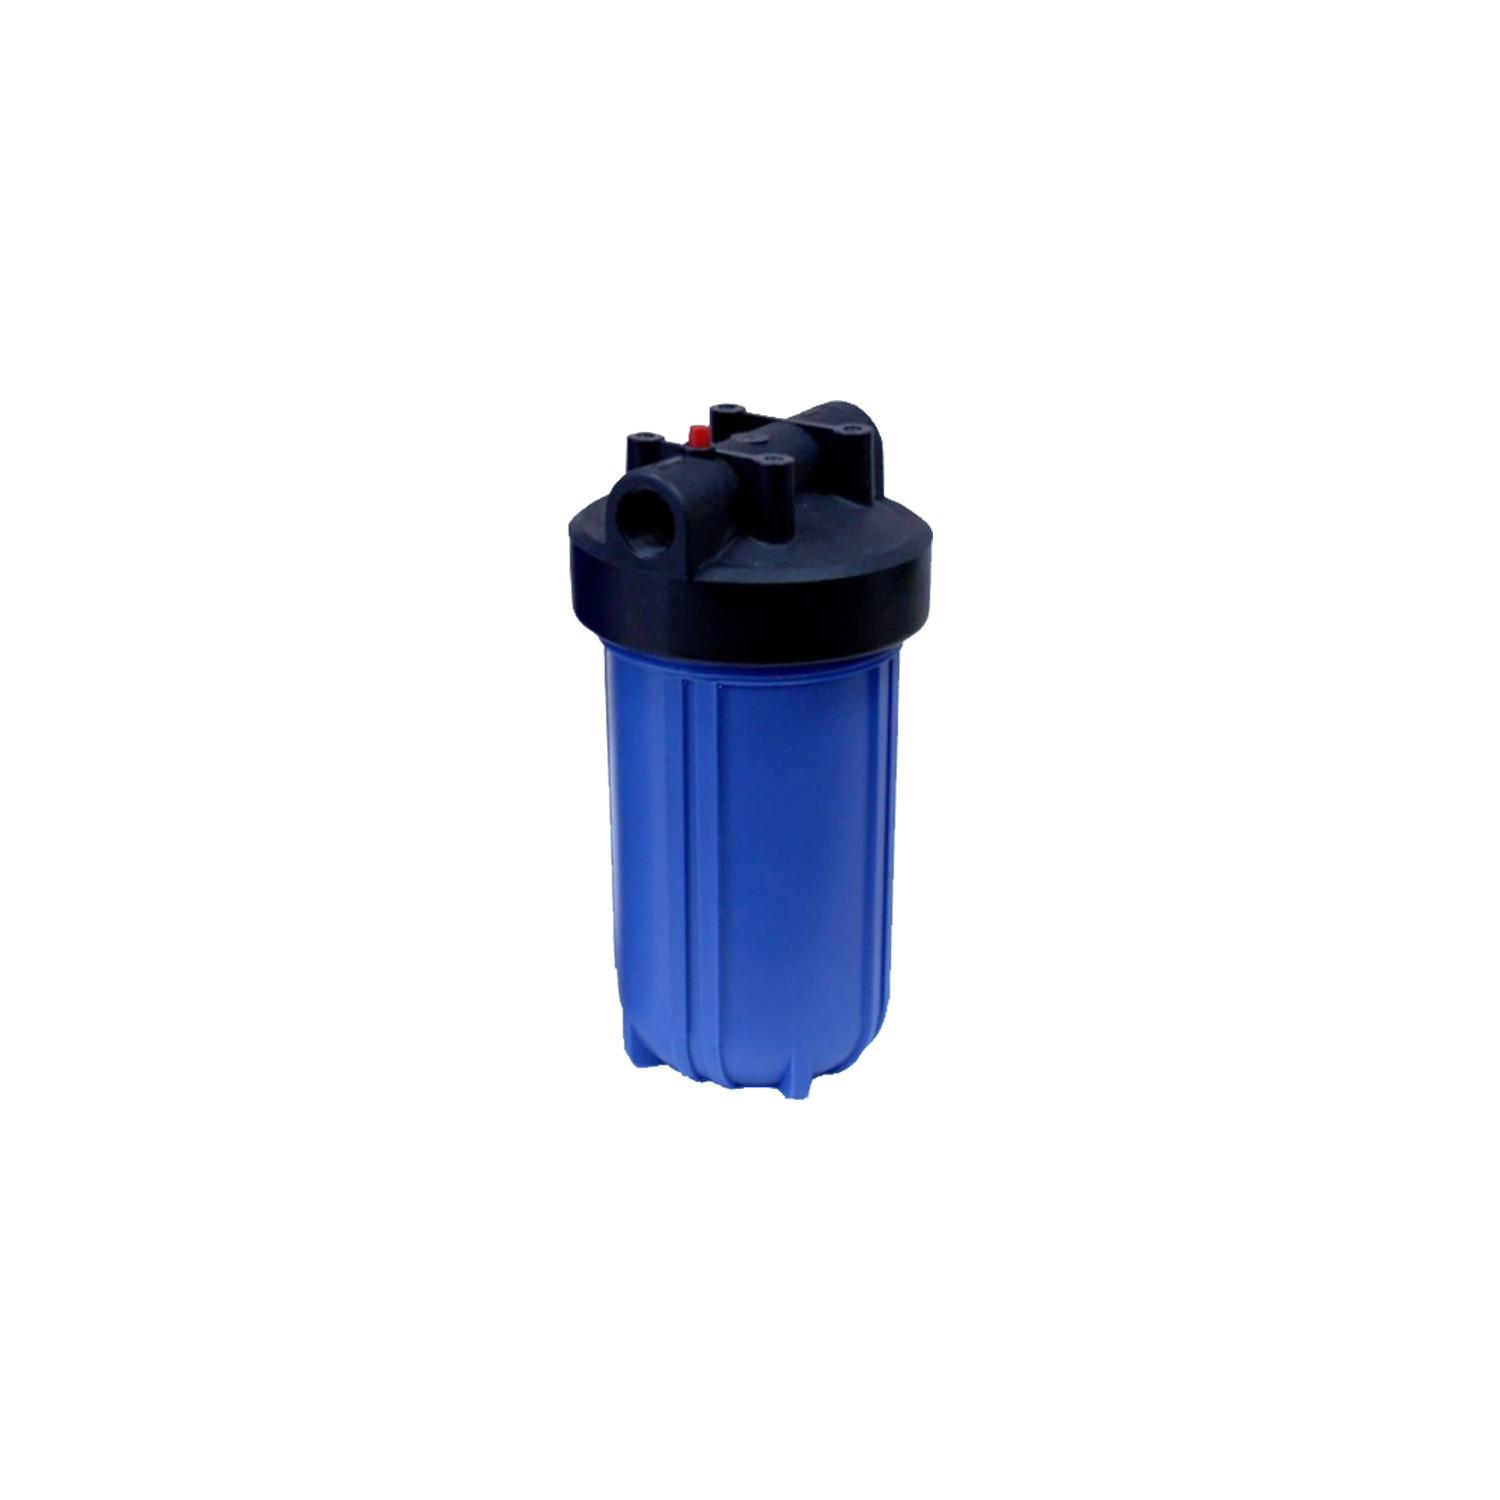 Механический фильтр очистки воды Crystal FH-10BB1